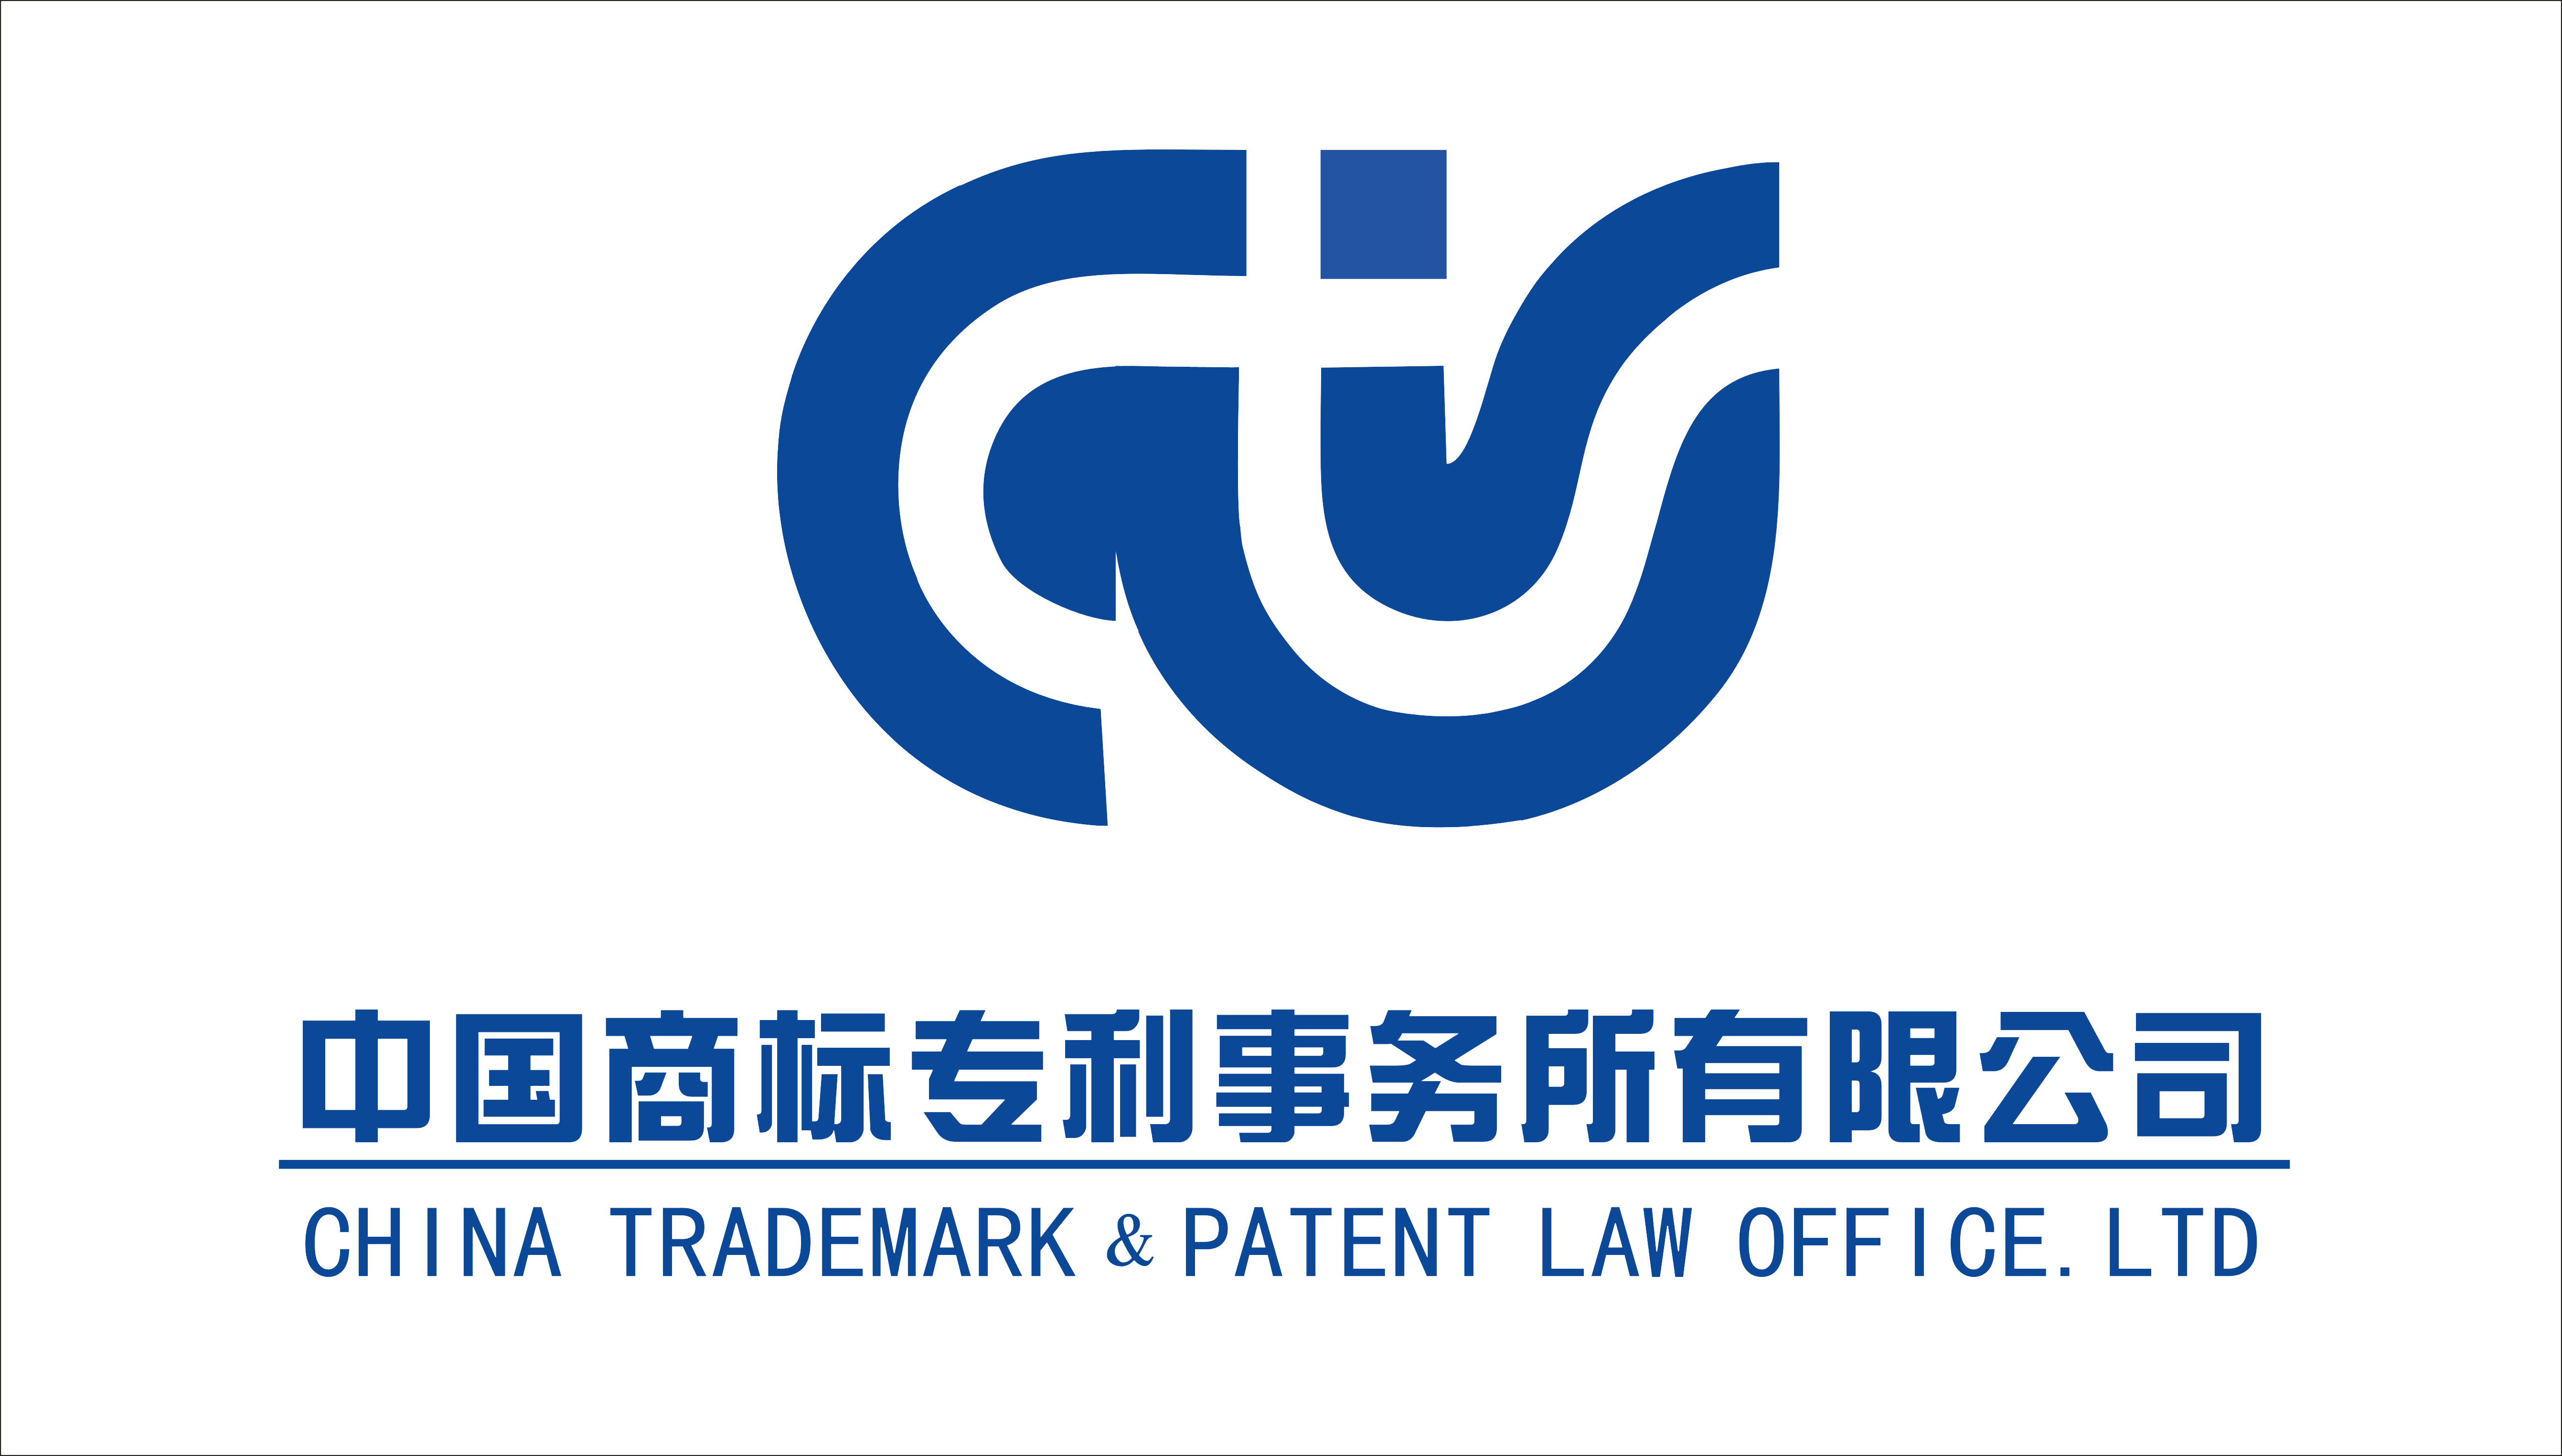 中國商標專利事務所有限公司陜西分公司2020招聘公告